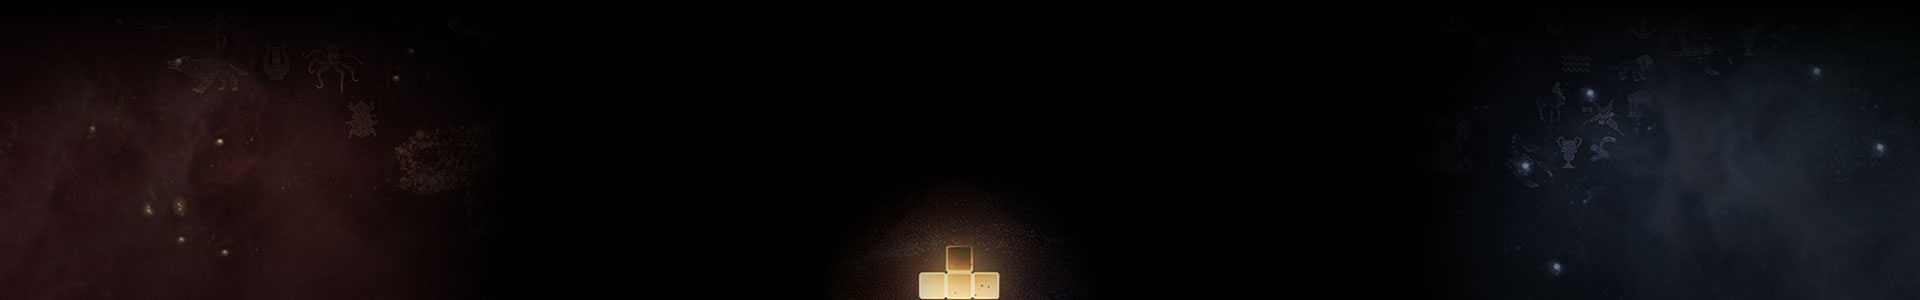 Świecący klocek Tetris pośród gwiazd.